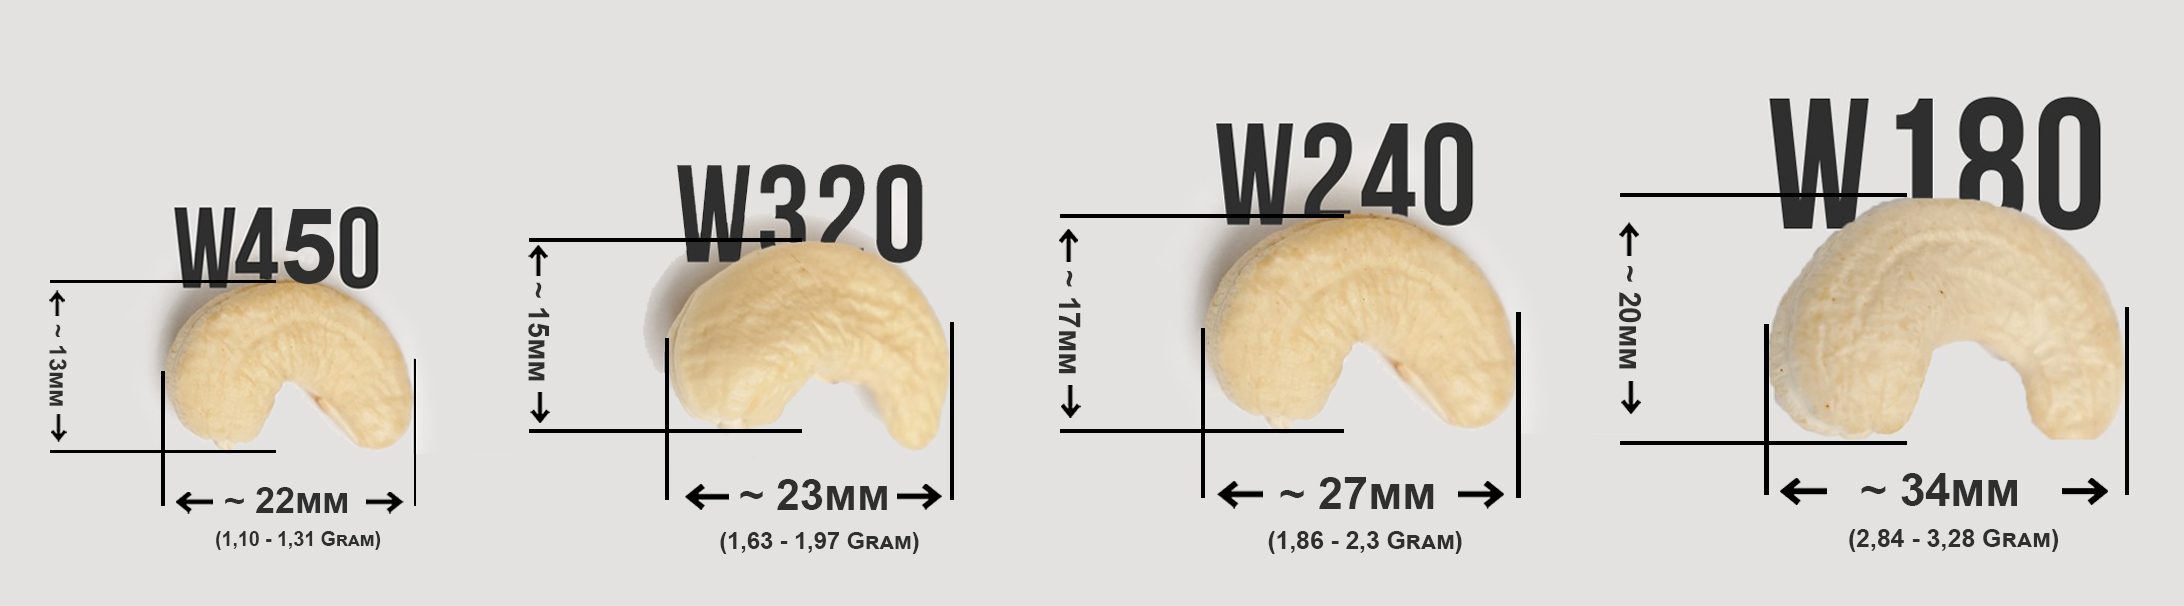 Größen einiger gängiger Arten von Cashewkernen, die von AFIs klassifiziert werden: W180-Cashewkerne, W240-Cashewkerne, W320-Cashewkerne, W450-Cashewkerne